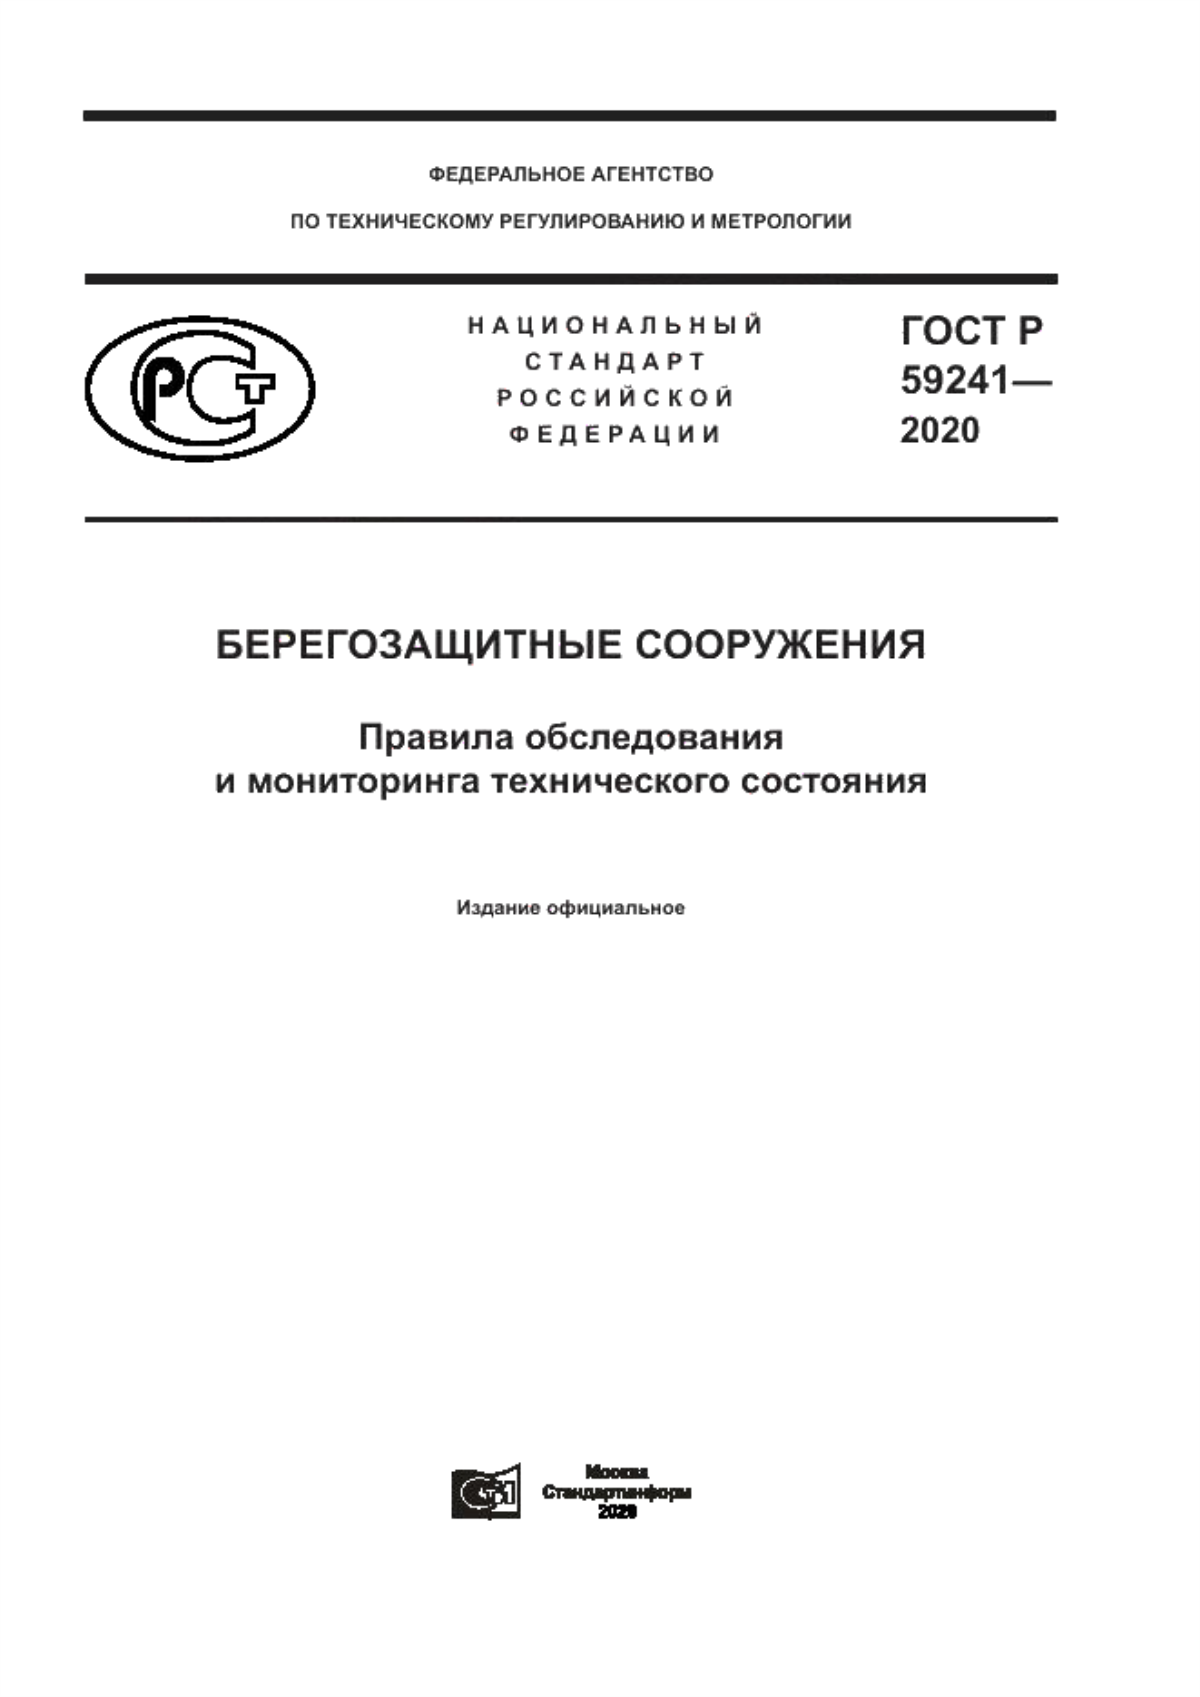 ГОСТ Р 59241-2020 Берегозащитные сооружения. Правила обследования и мониторинга технического состояния